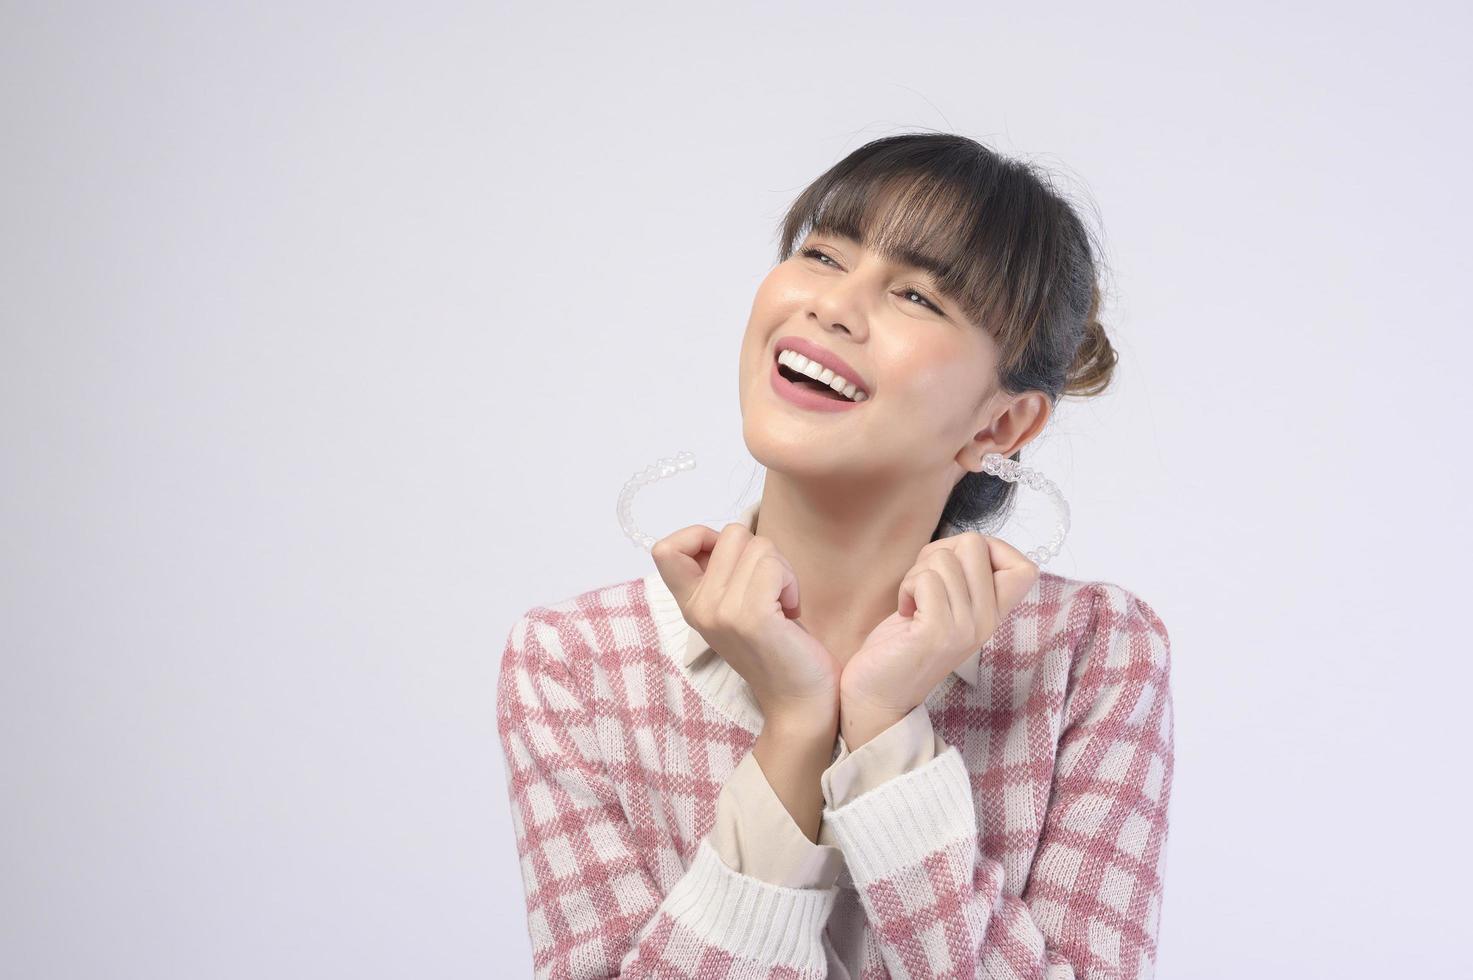 jonge lachende vrouw met invisalign beugels op witte achtergrond studio, tandheelkundige zorg en orthodontische concept. foto